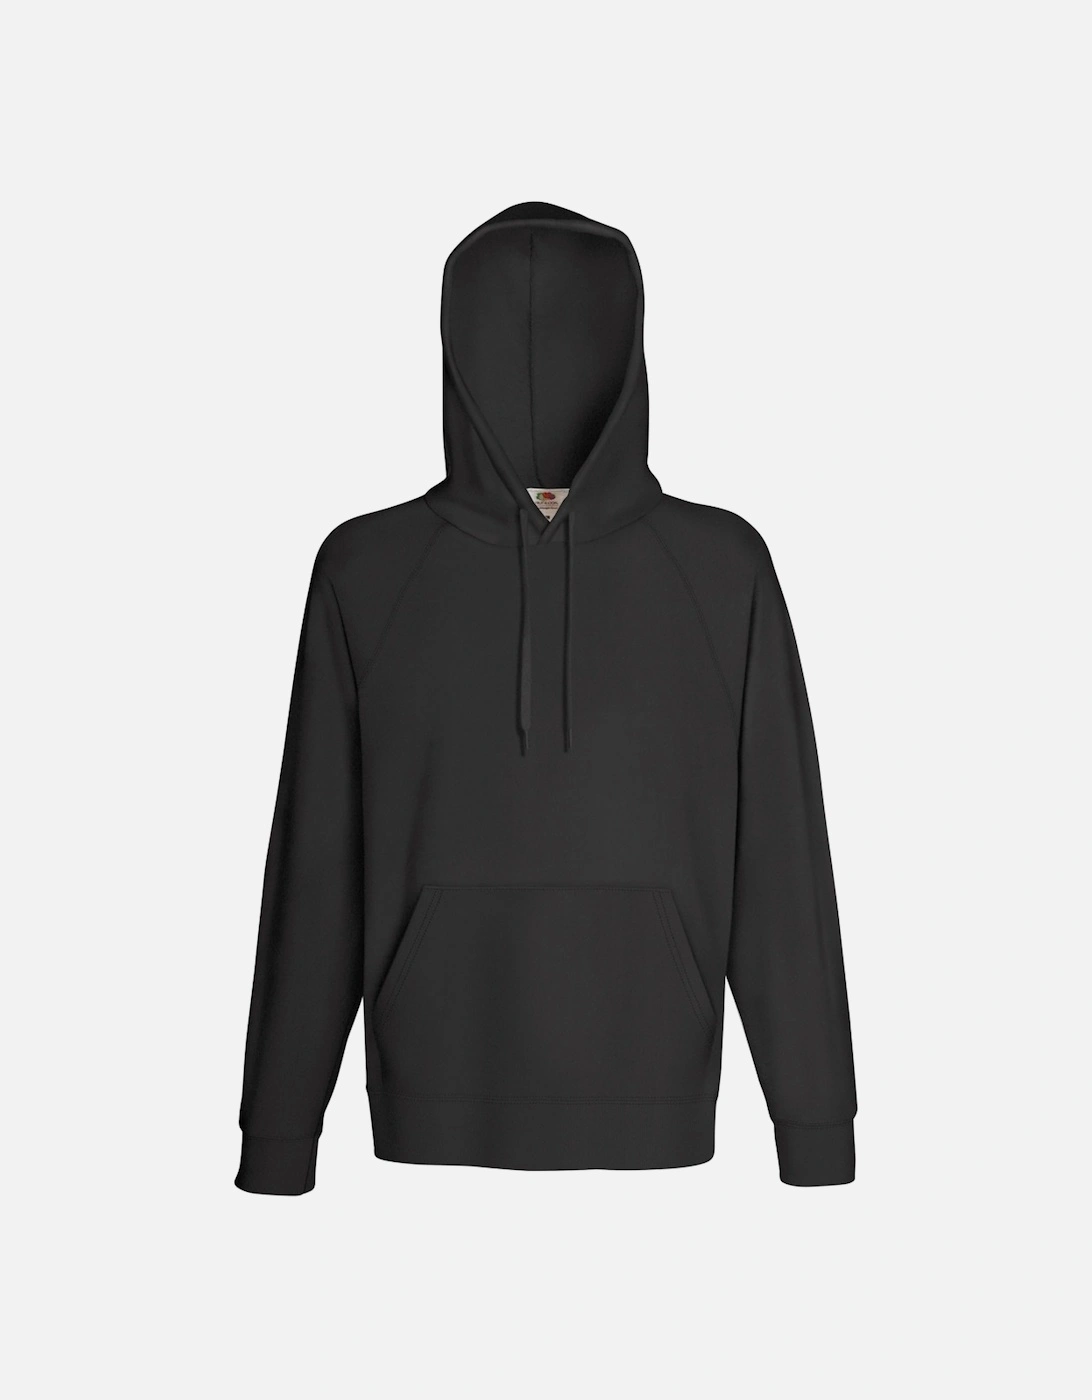 Mens Lightweight Hooded Sweatshirt / Hoodie (240 GSM), 3 of 2